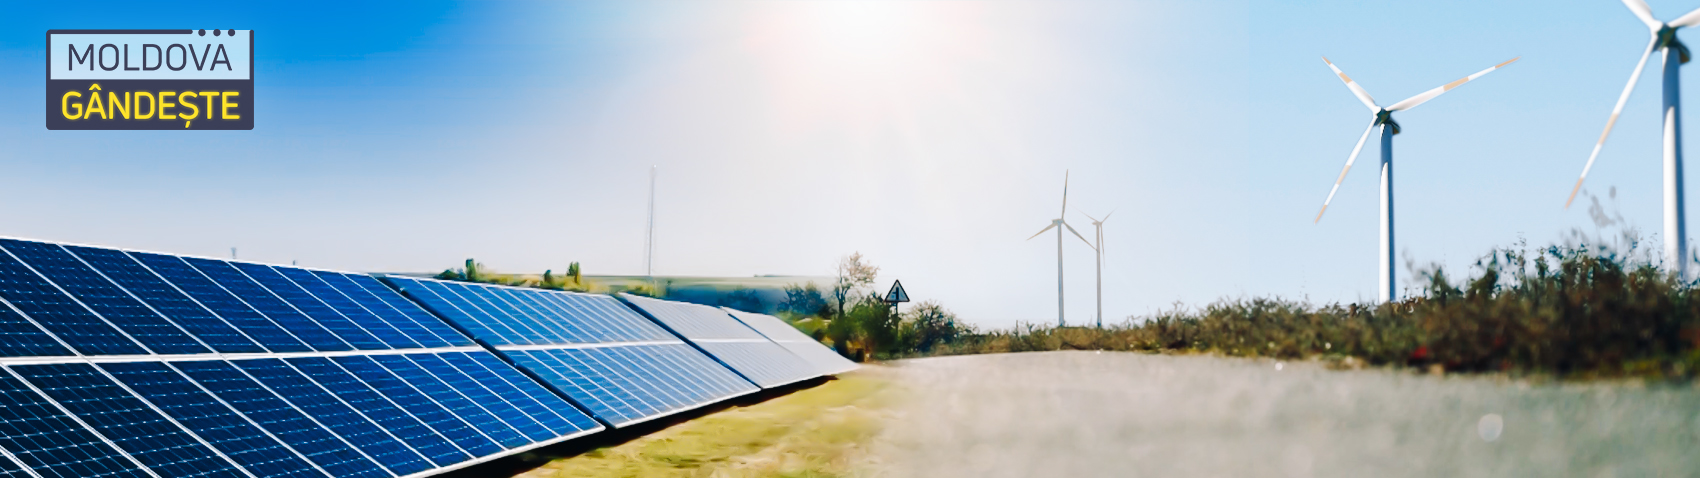 Moldova, prima țară din lume care utilizează energia solară pentru transportul public
